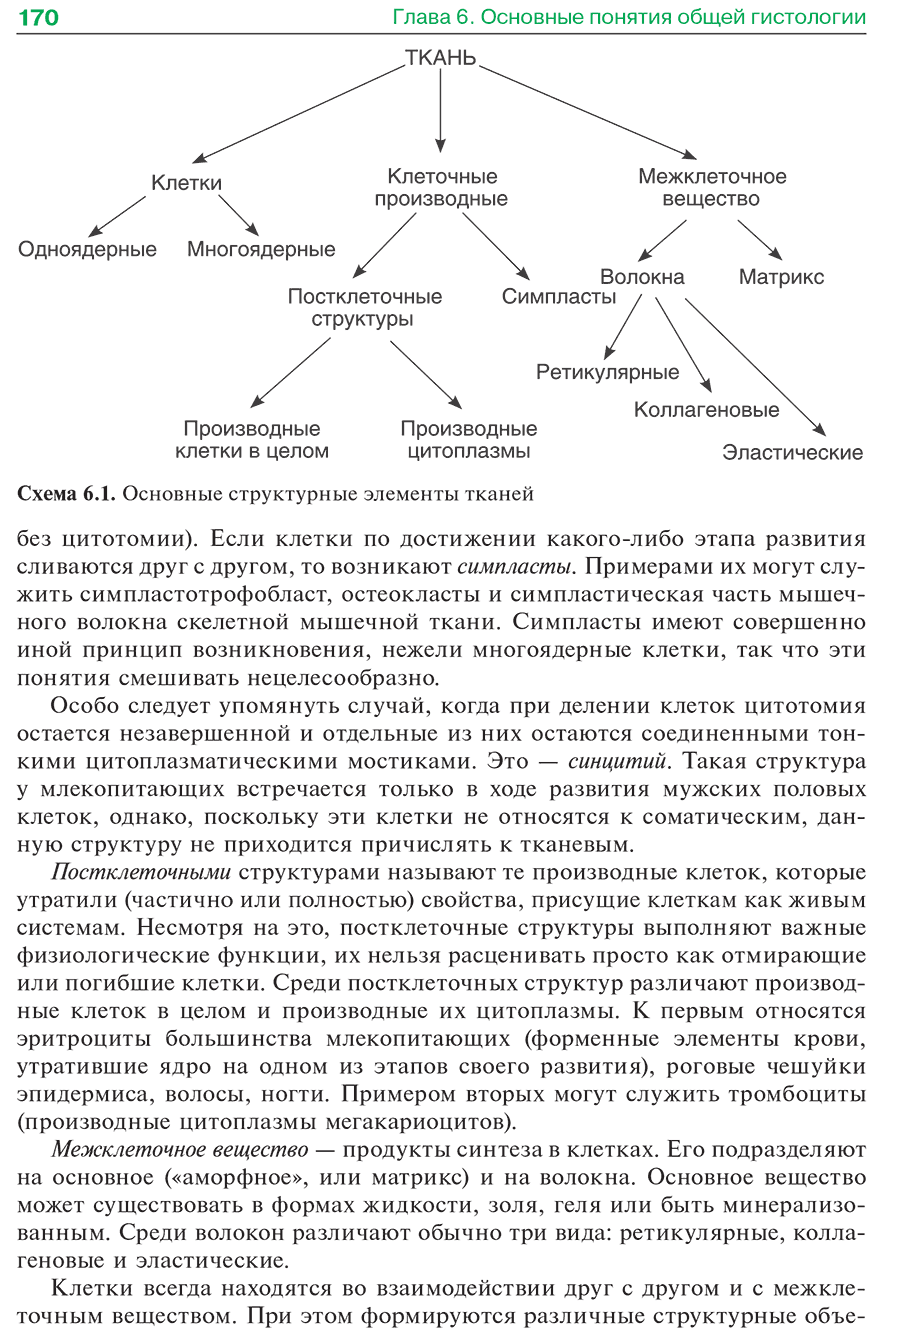 Схема 6.1. Основные структурные элементы тканей